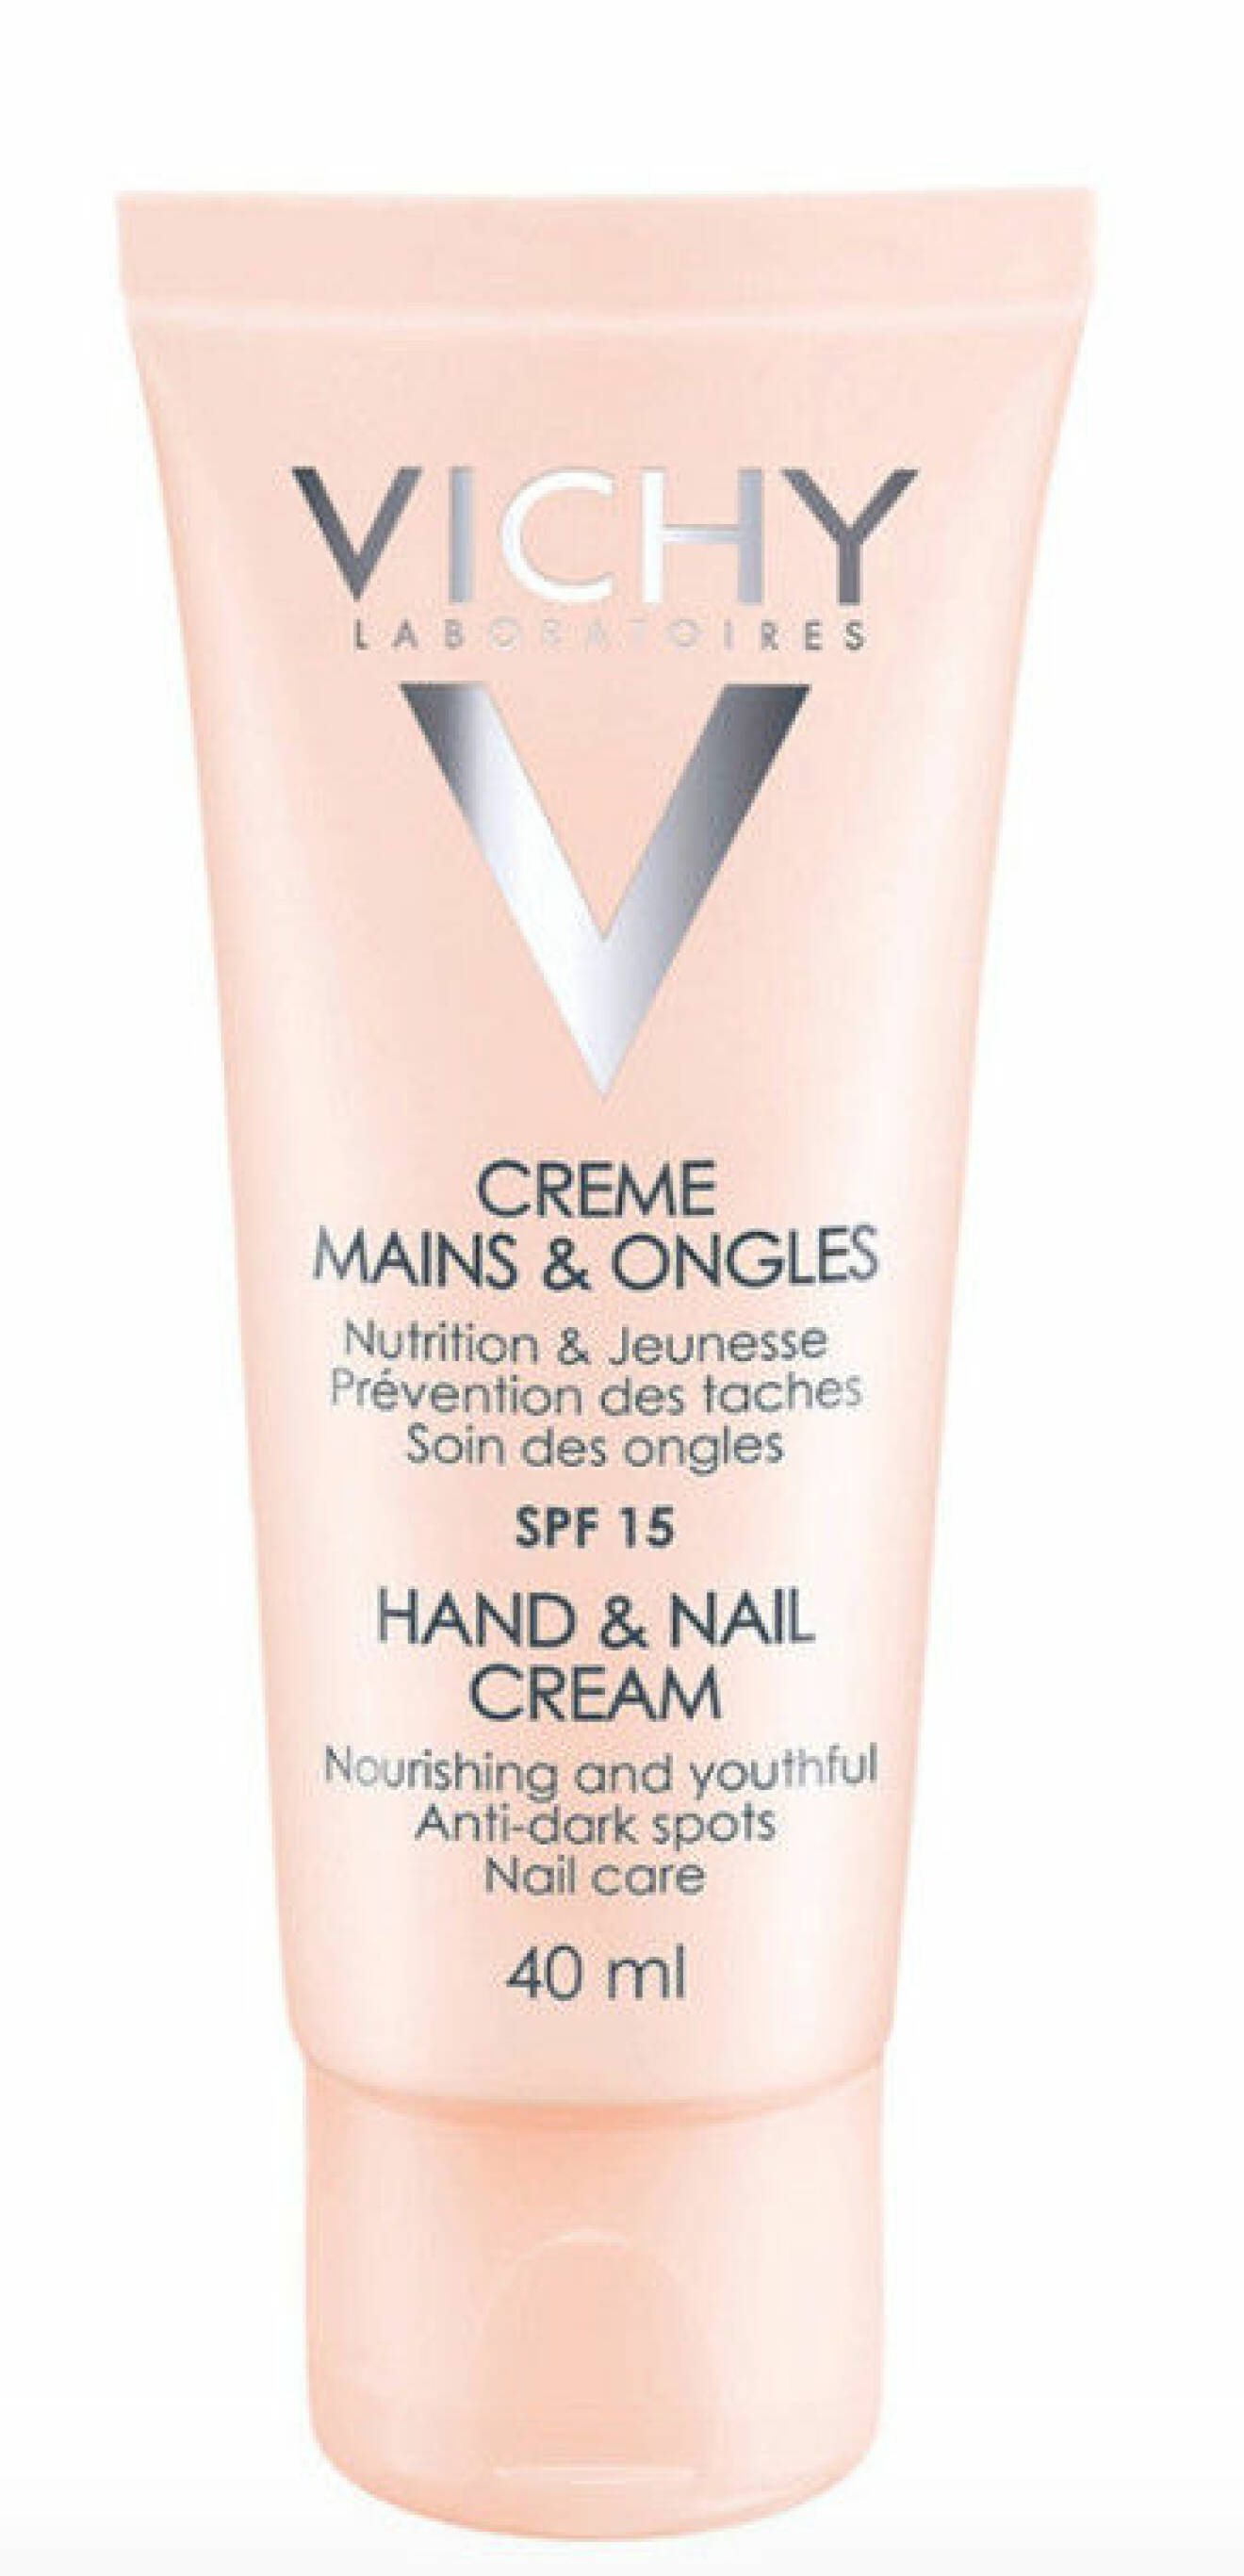 Hand & Nail Crème från Vichy fuktar naglar och hud